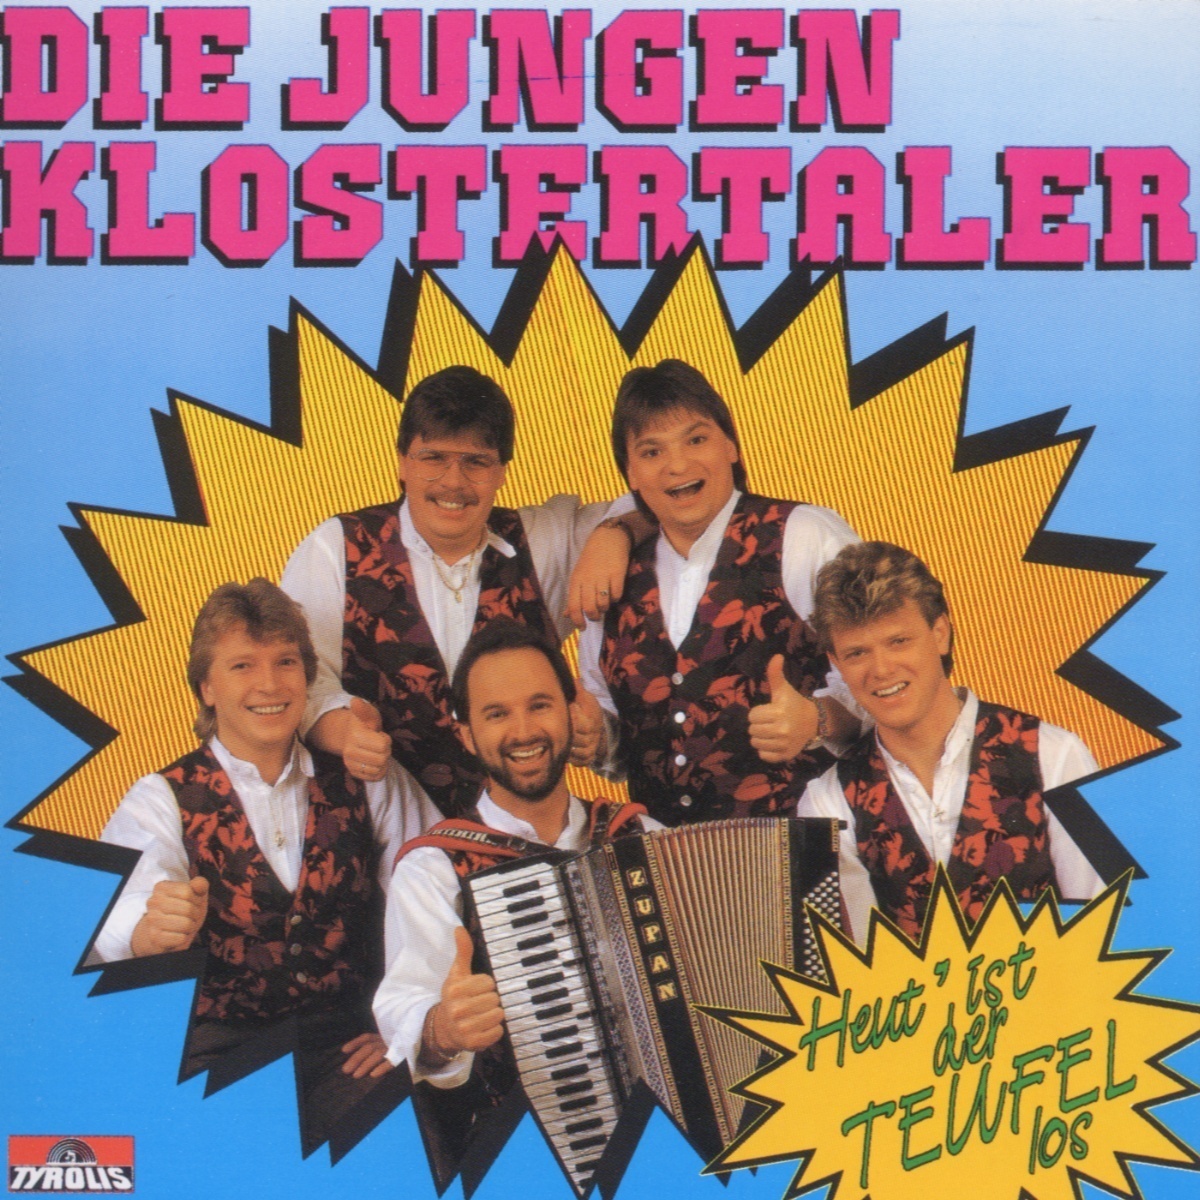 Heut ist der Teufel los - Die jungen Klostertaler. (CD)